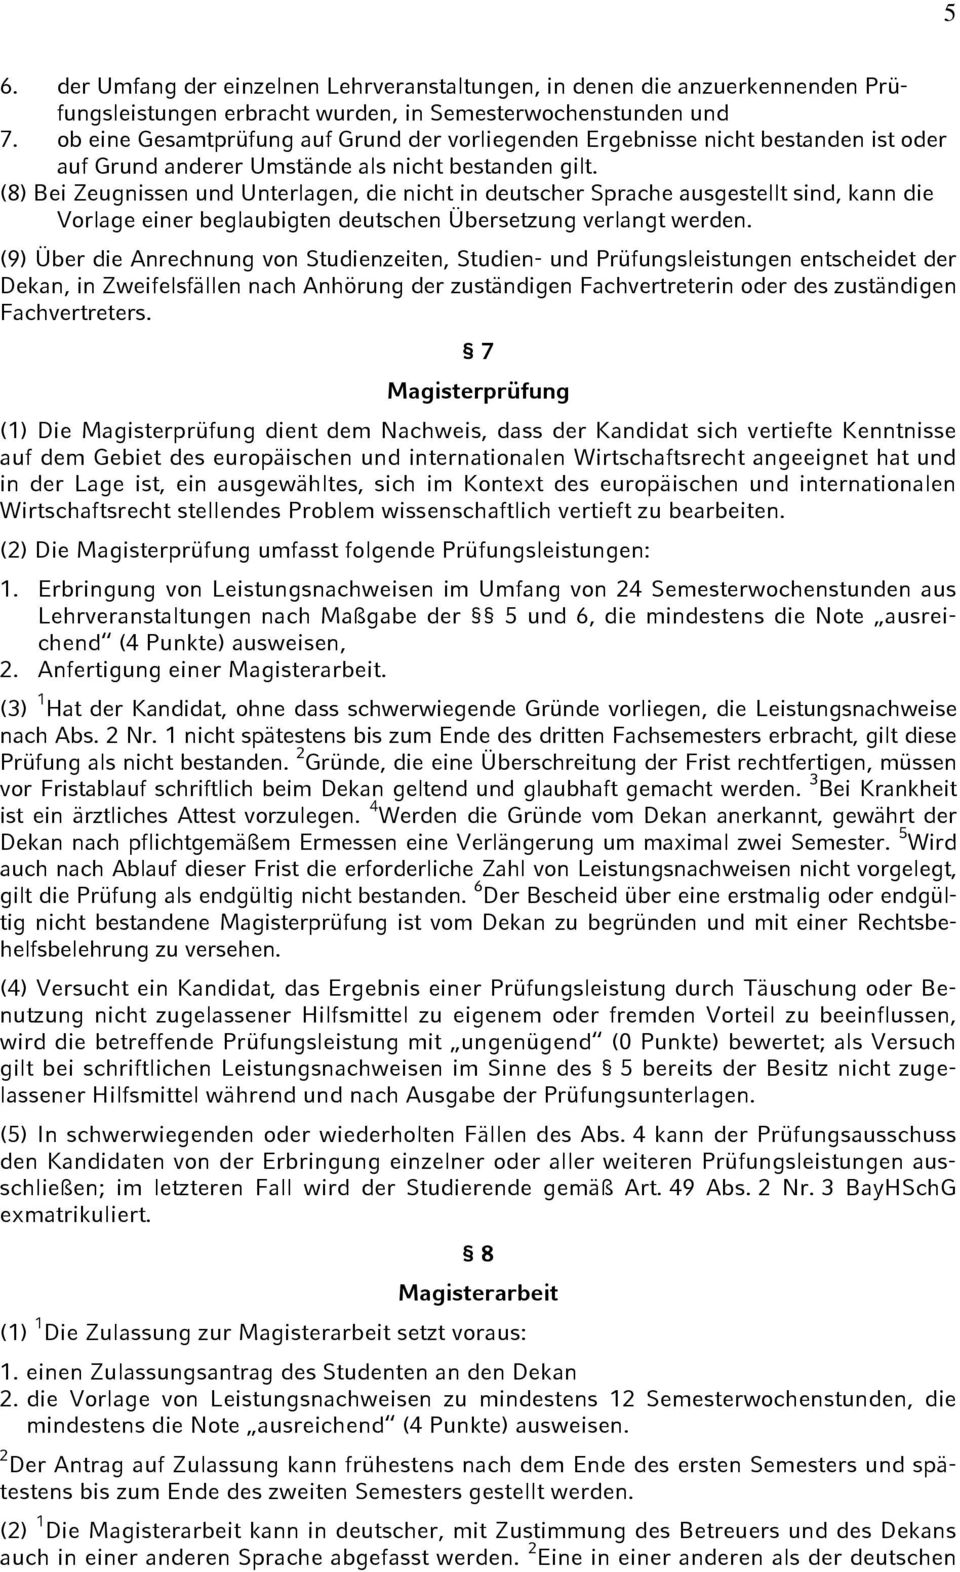 (8) Bei Zeugnissen und Unterlagen, die nicht in deutscher Sprache ausgestellt sind, kann die Vorlage einer beglaubigten deutschen Übersetzung verlangt werden.